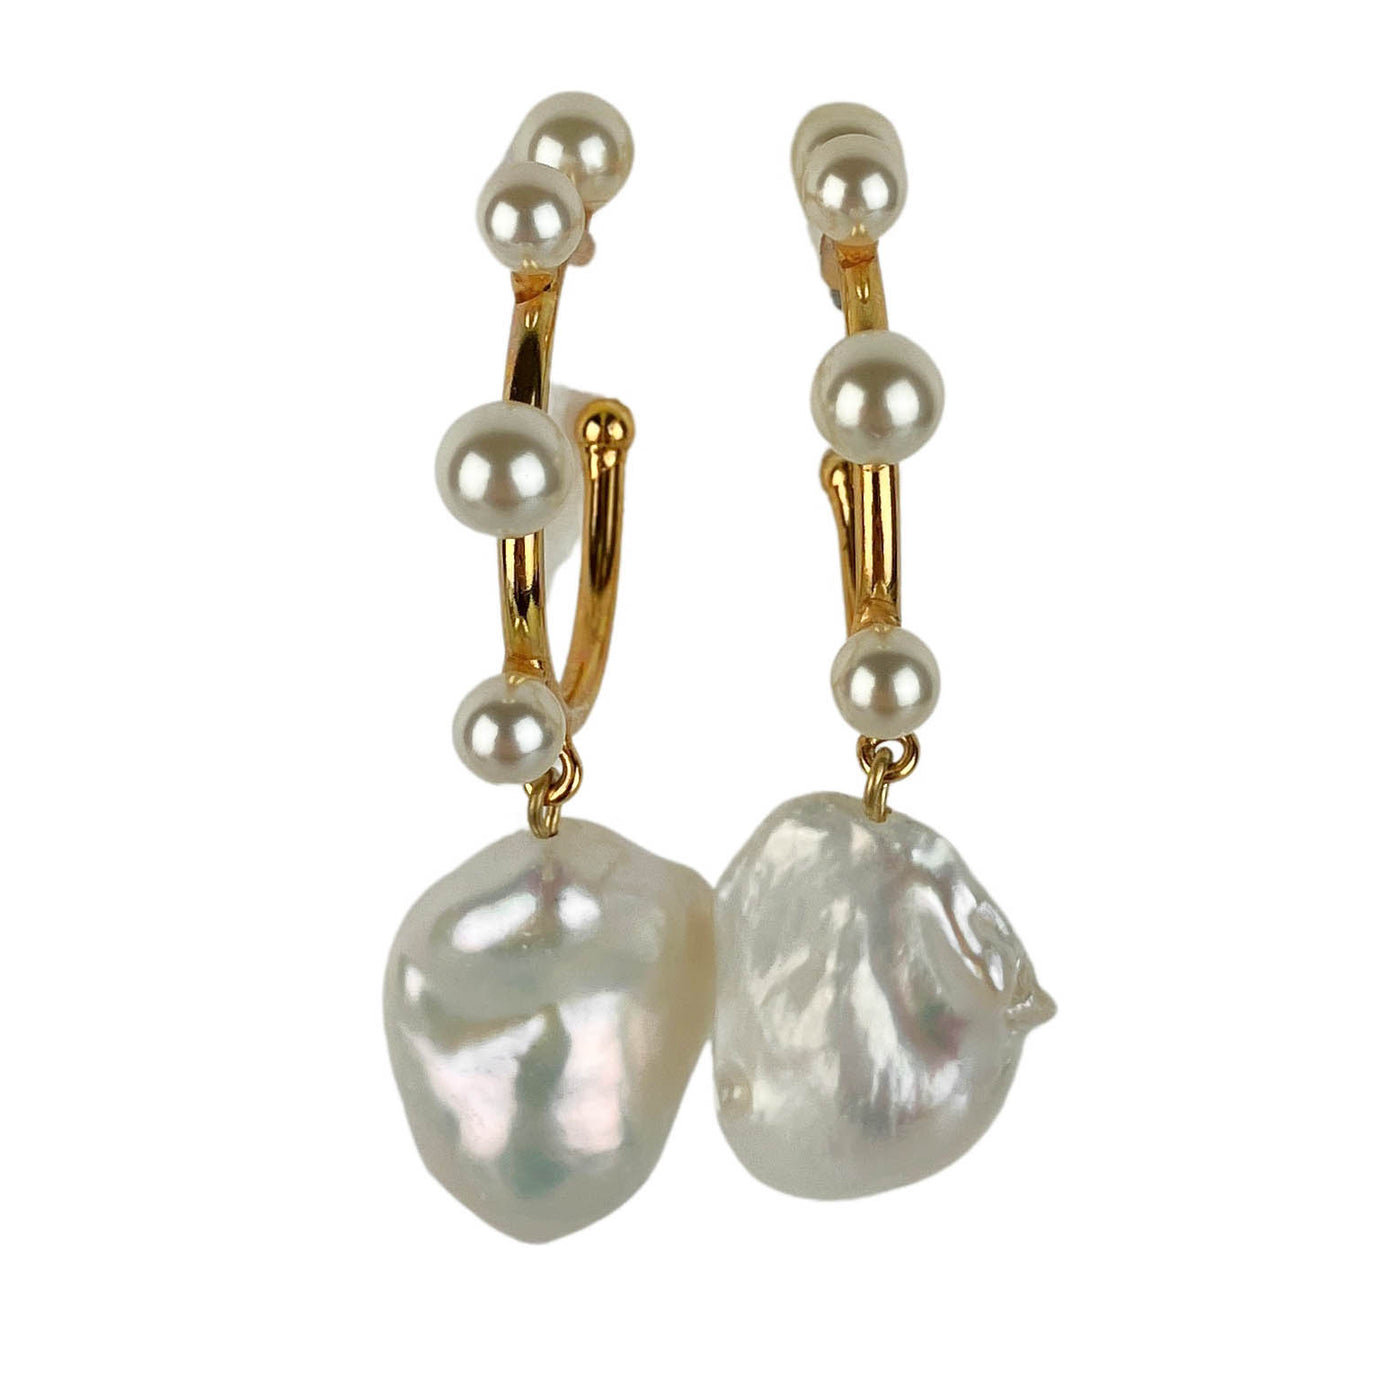 Jennifer Behr Yohana Hoop Earrings in Gold/Pearl - Discounts on Jennifer Behr at UAL